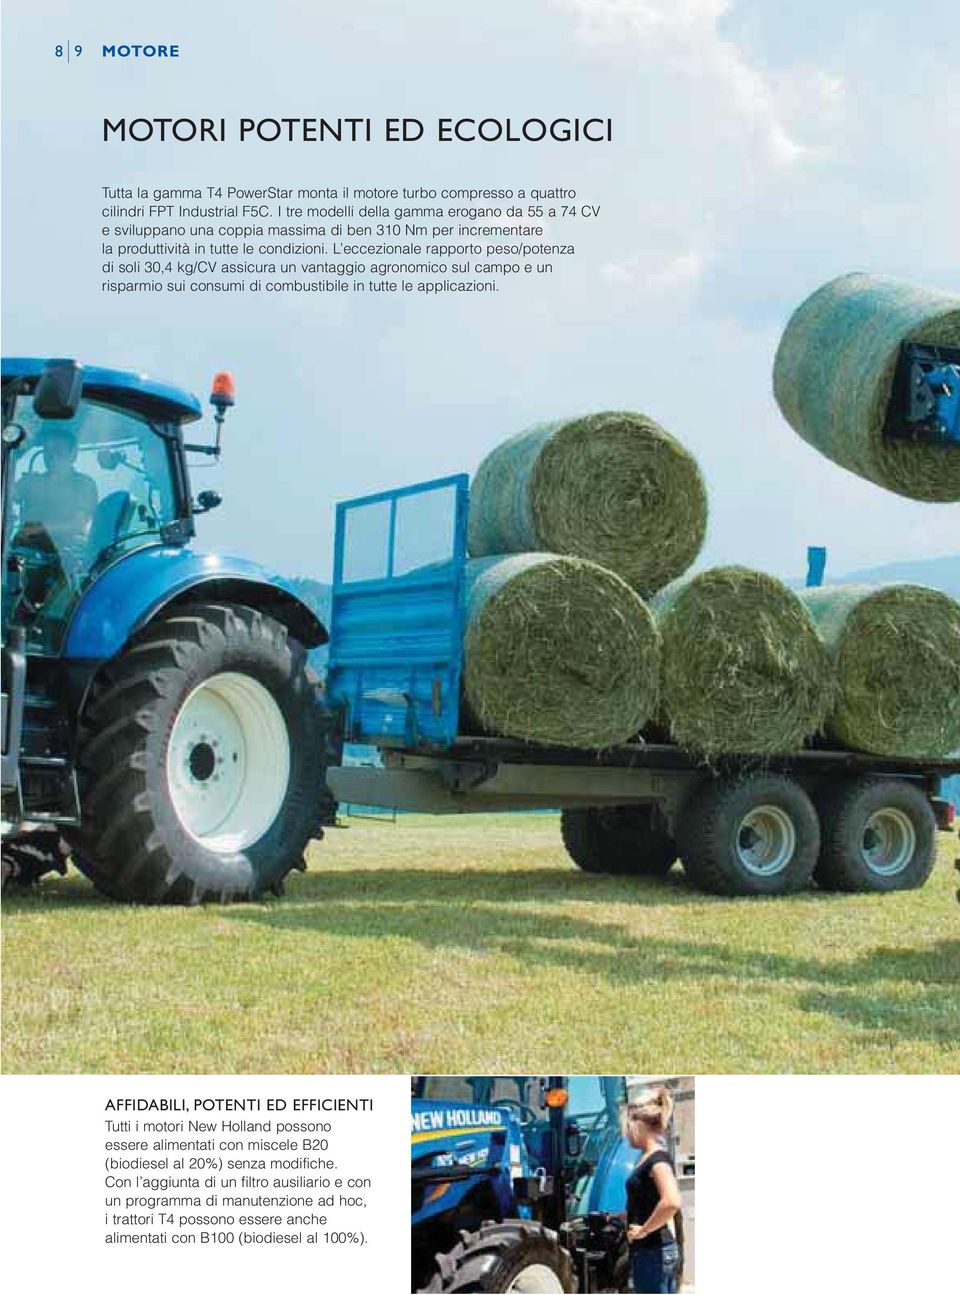 L eccezionale rapporto peso/potenza di soli 30,4 kg/cv assicura un vantaggio agronomico sul campo e un risparmio sui consumi di combustibile in tutte le applicazioni.